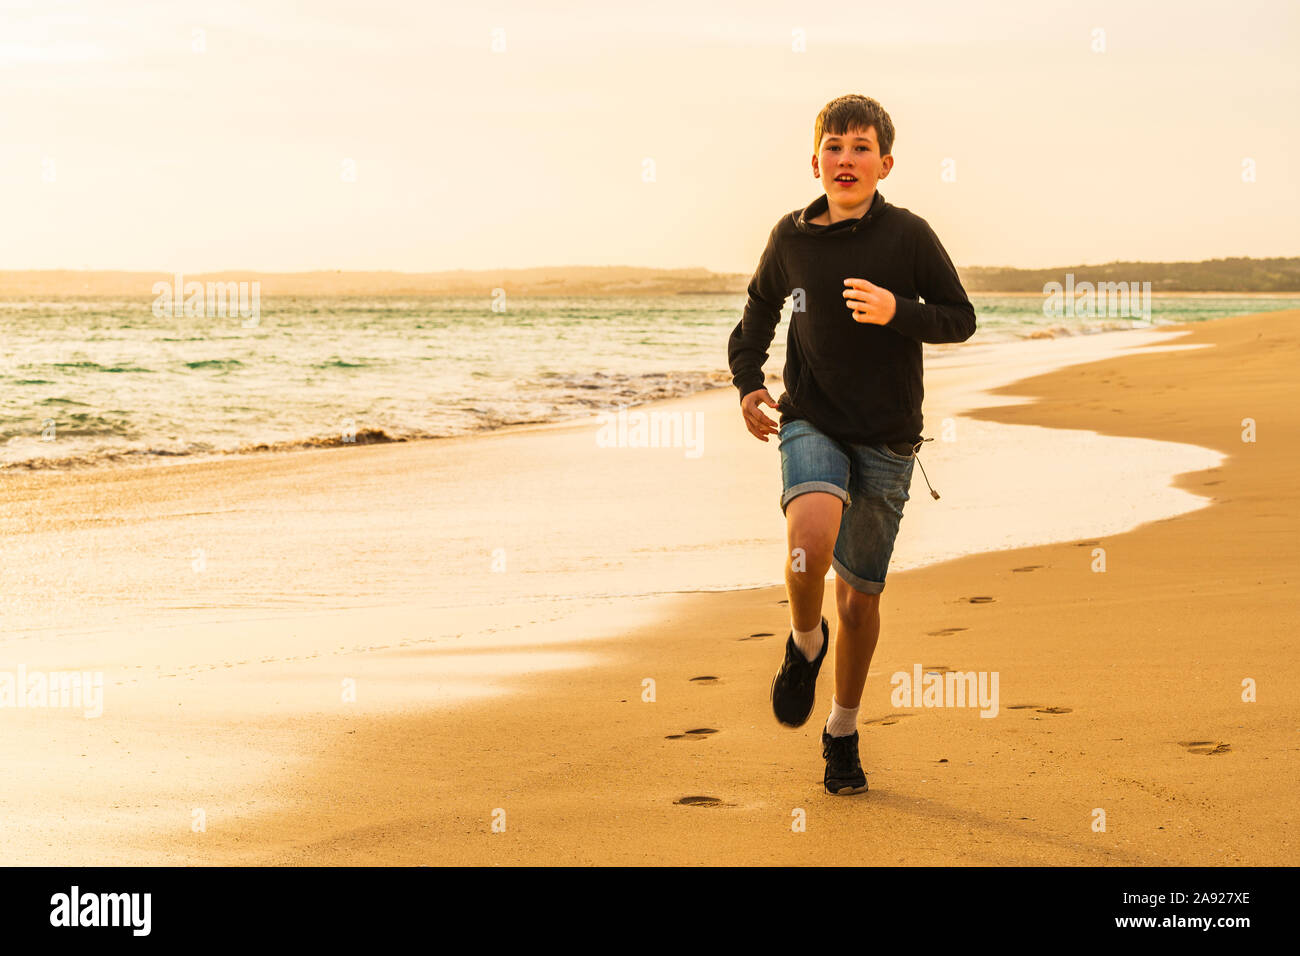 Boy running on beach at sunset Stock Photo